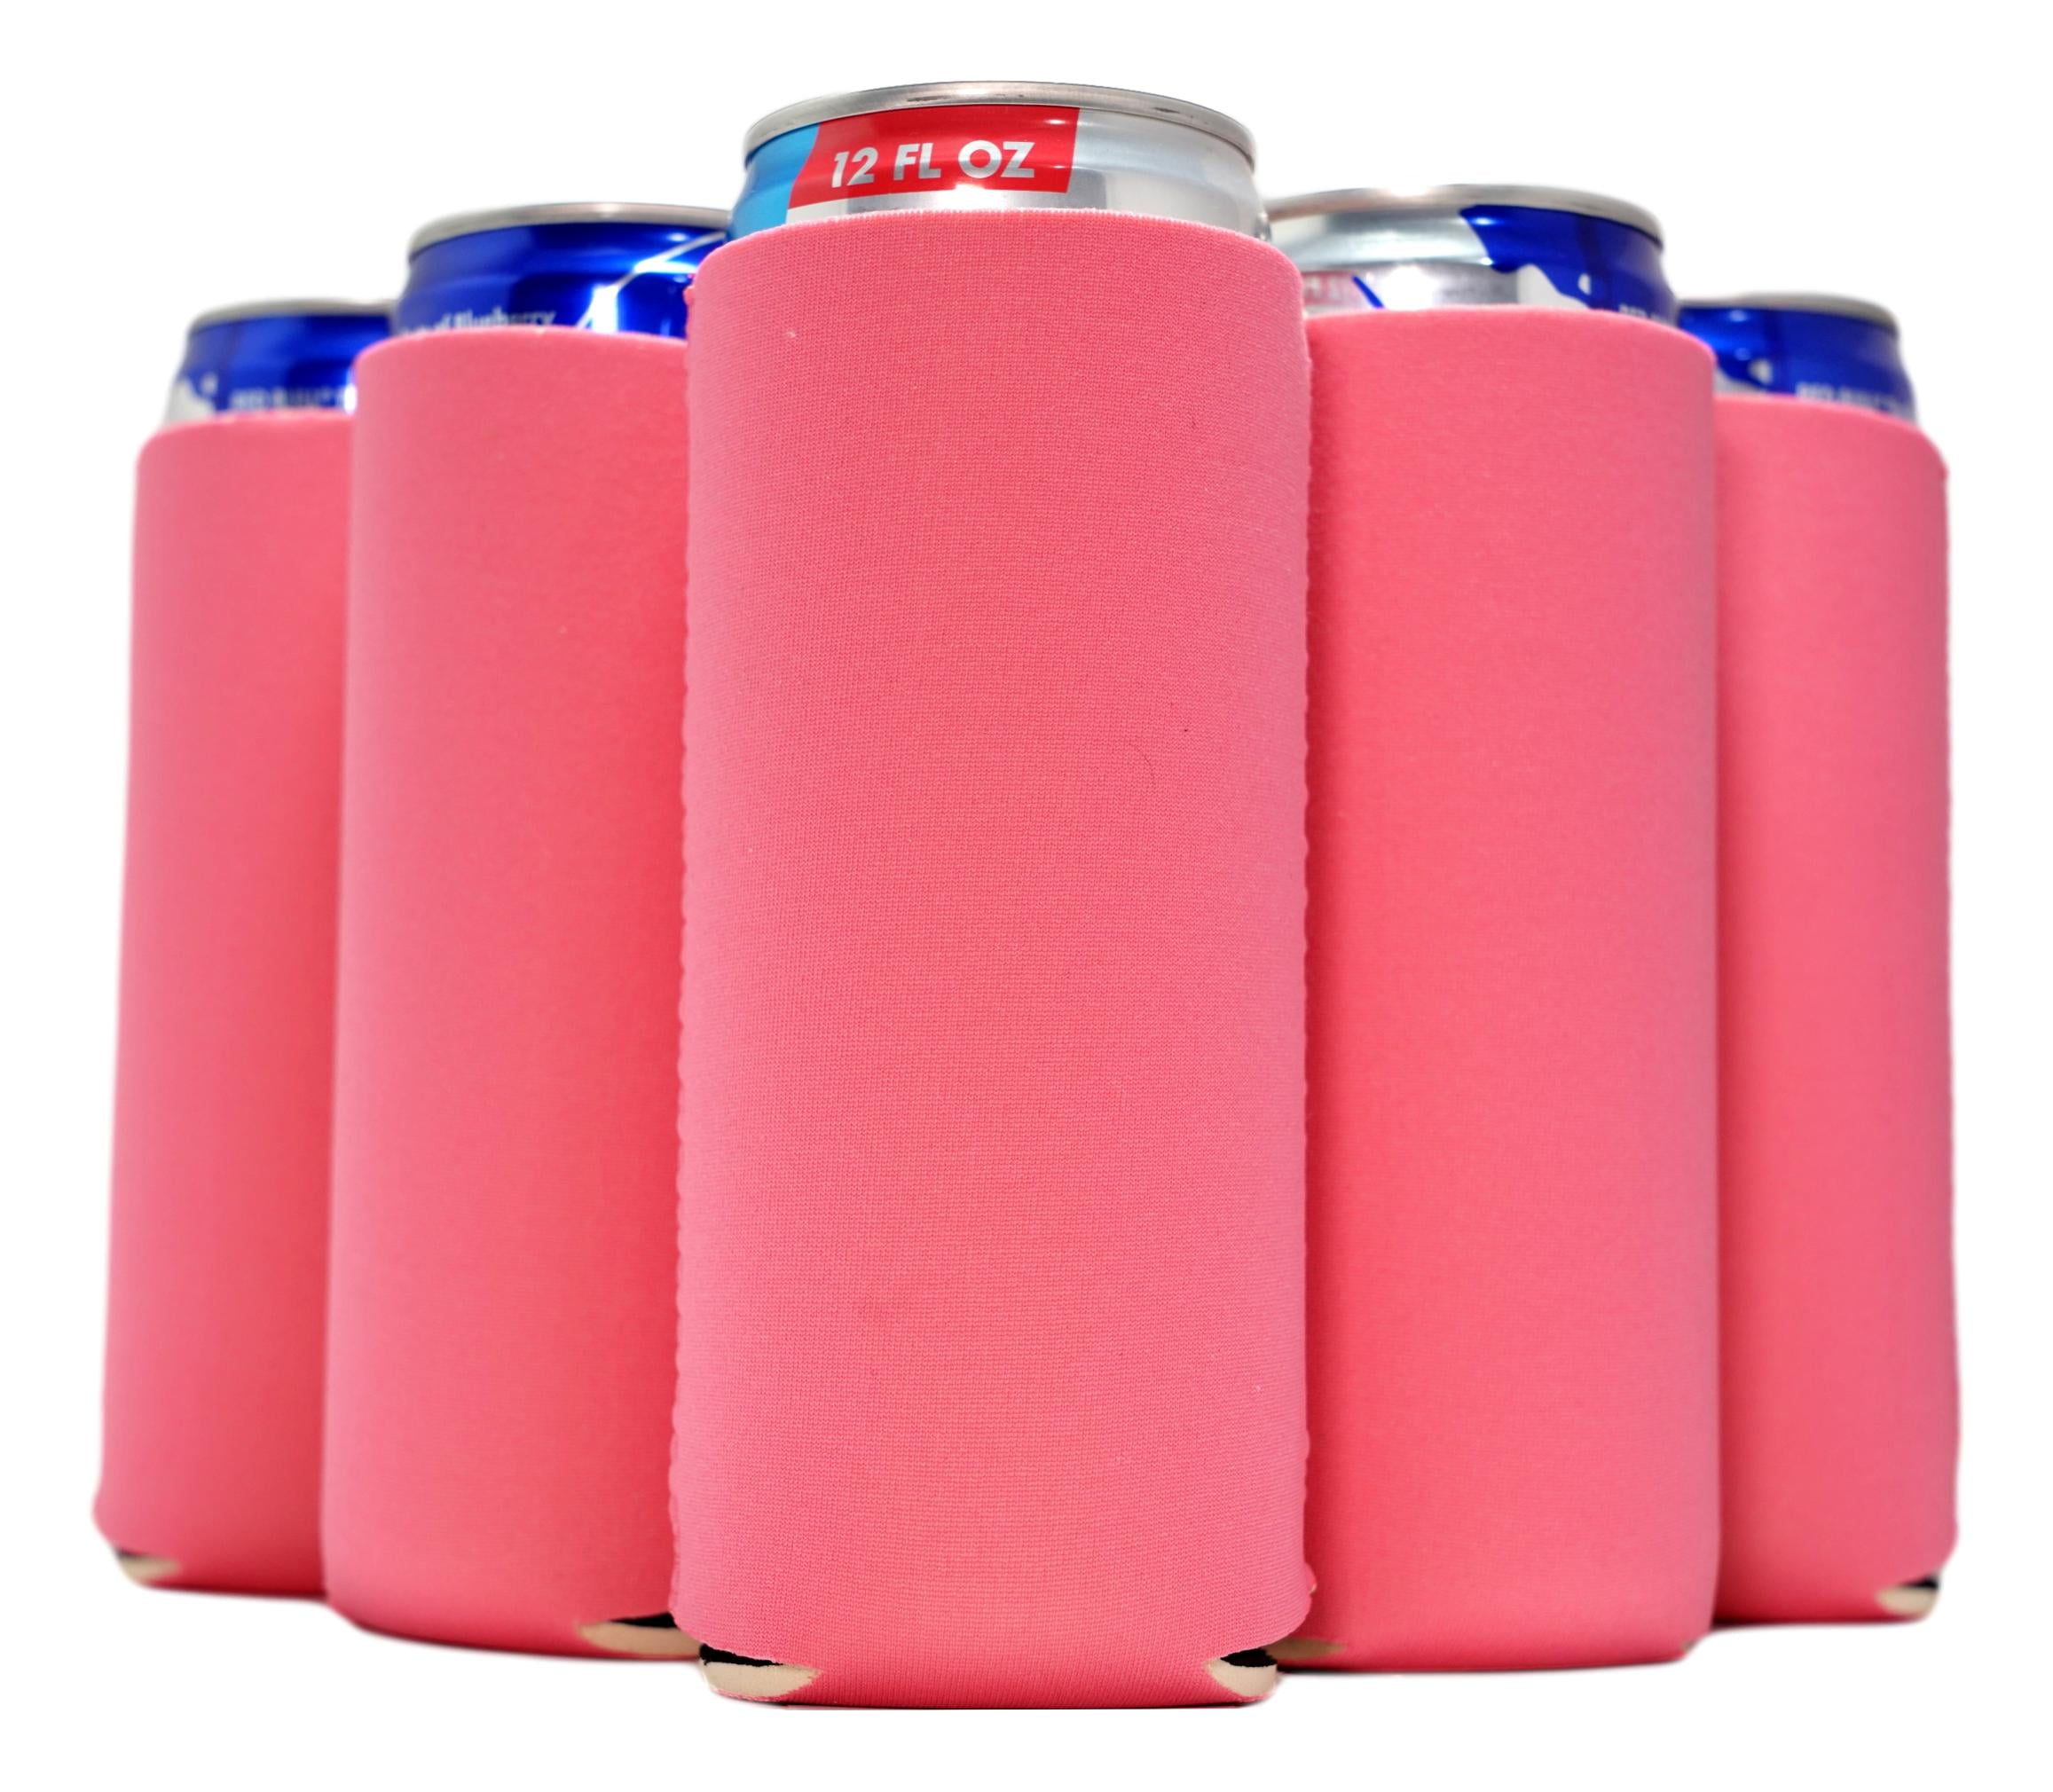 QualityPerfection 6 Hot Pink Slim Can Cooler Sleeves, Beer/Energy Drink Blank Skinny 12 oz Neoprene Coolie (6, Hot Pink)